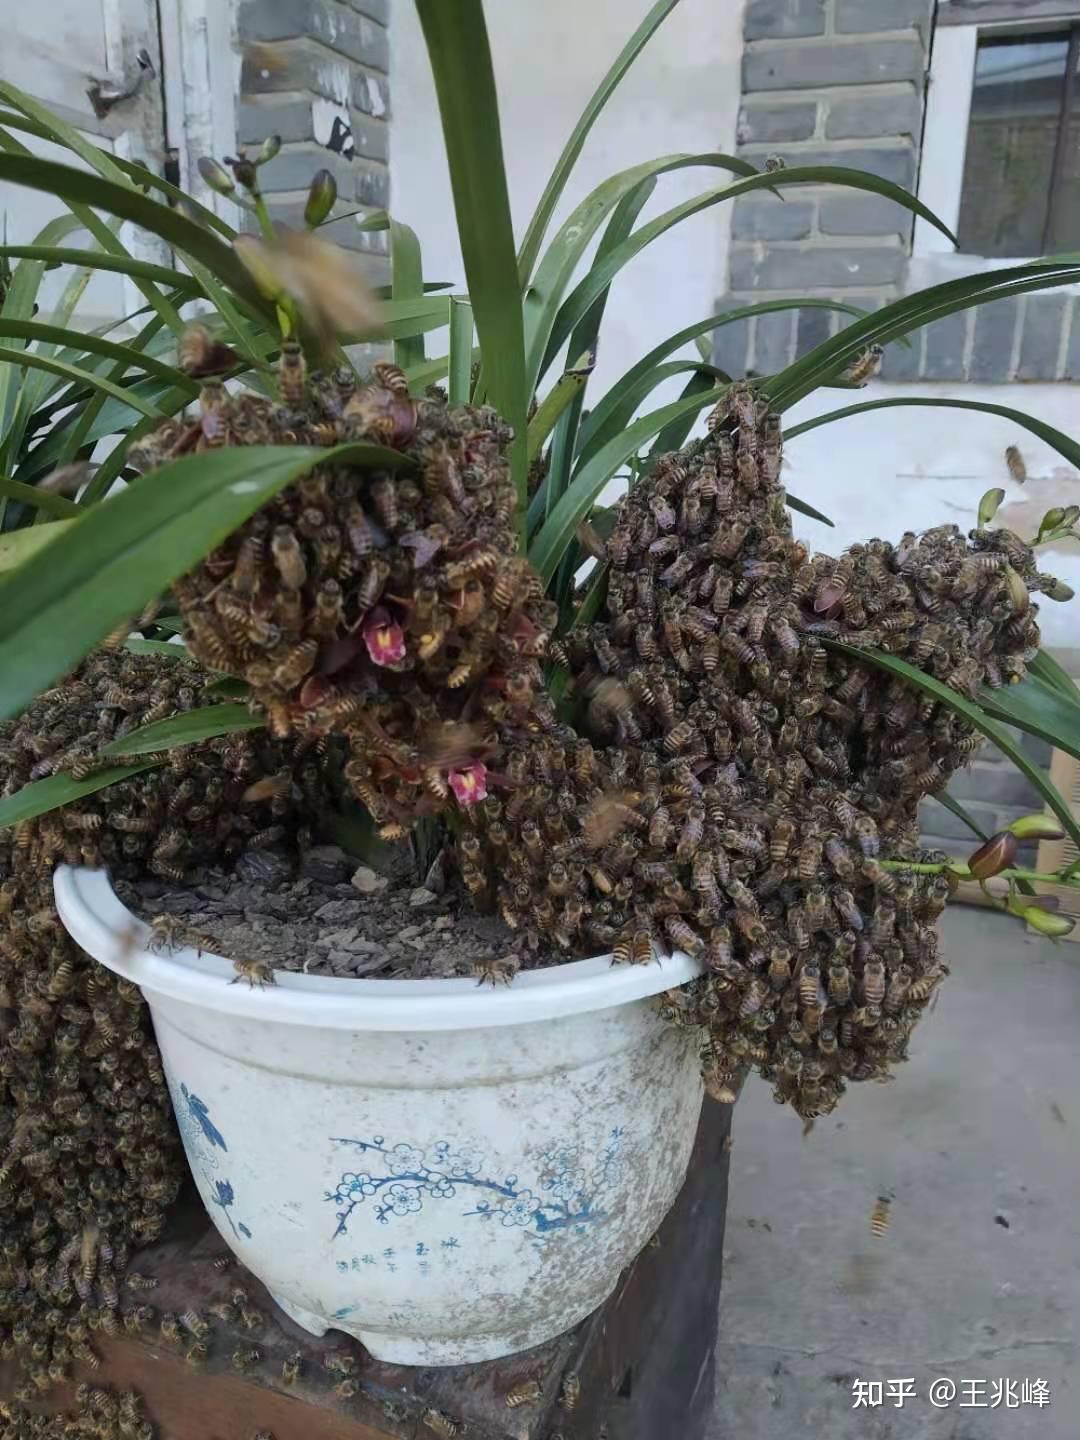 蜜蜂兰真的可以吸引蜜蜂吗?